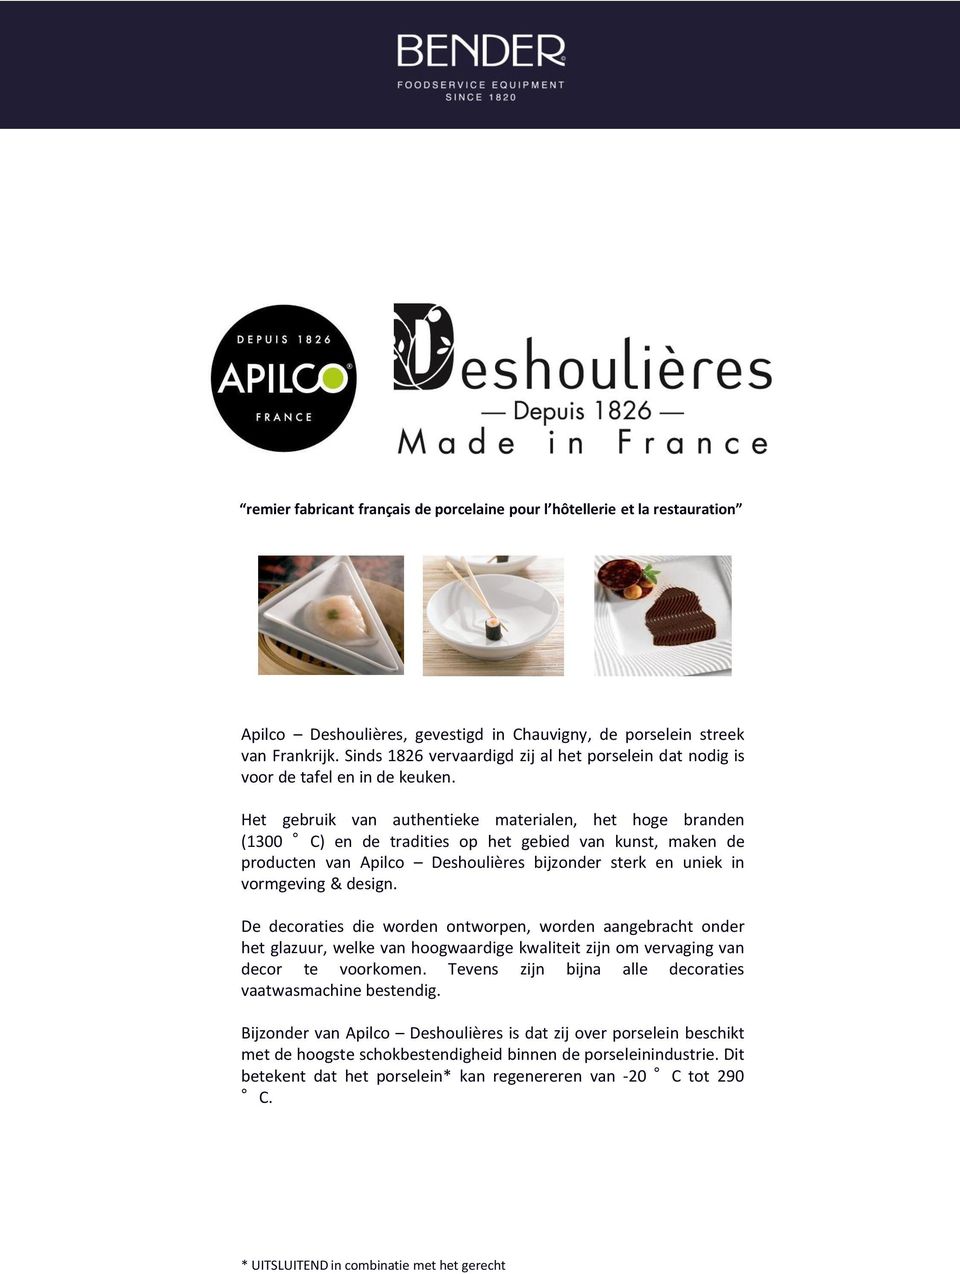 Het gebruik van authentieke materialen, het hoge branden (1300 C) en de tradities op het gebied van kunst, maken de producten van Apilco Deshoulières bijzonder sterk en uniek in vormgeving & design.